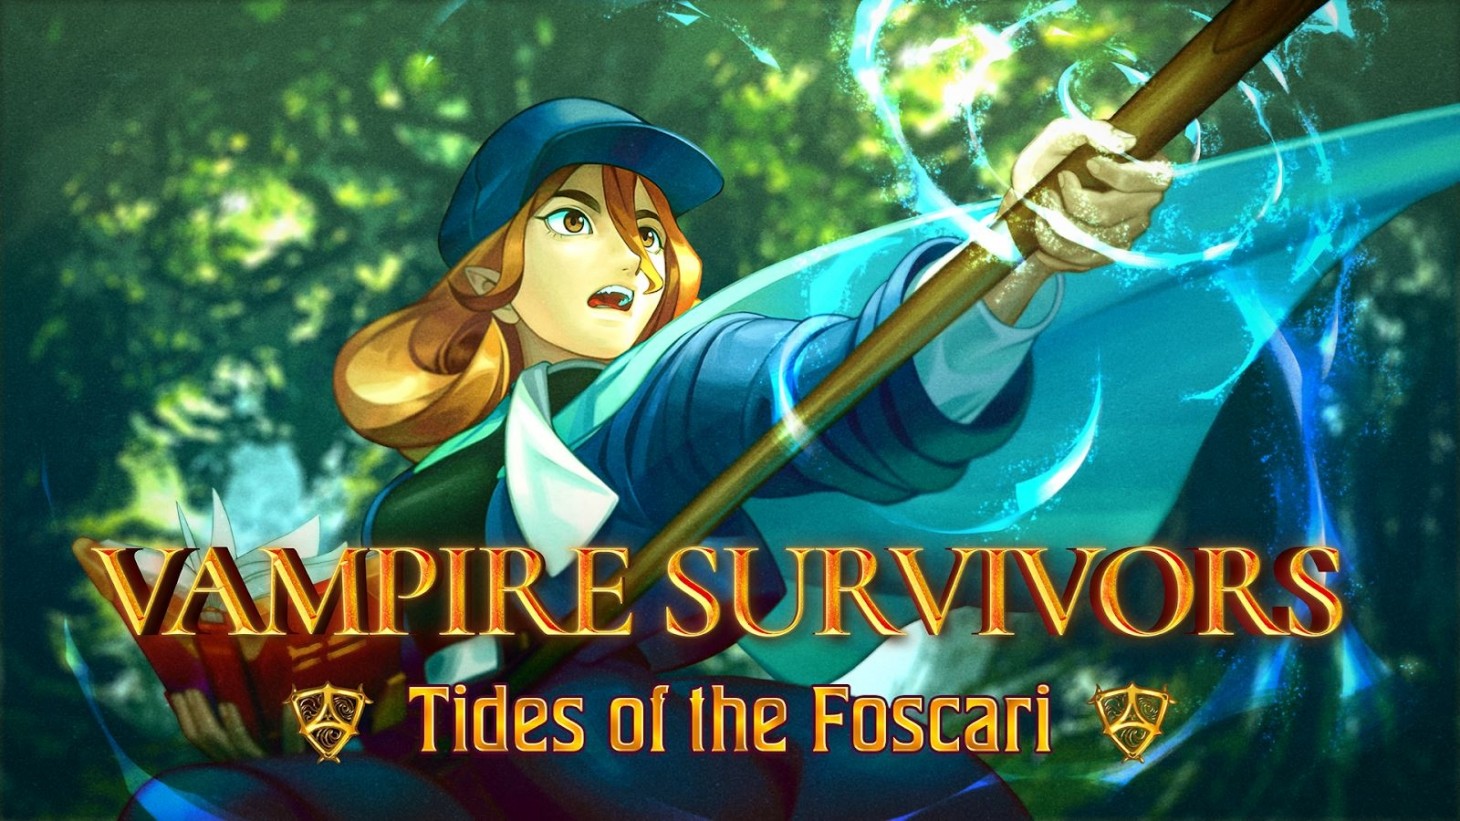 Vampire Survivors riceverà un nuovo pacchetto di espansione Tides of the Foscari al costo di 2 dollari.